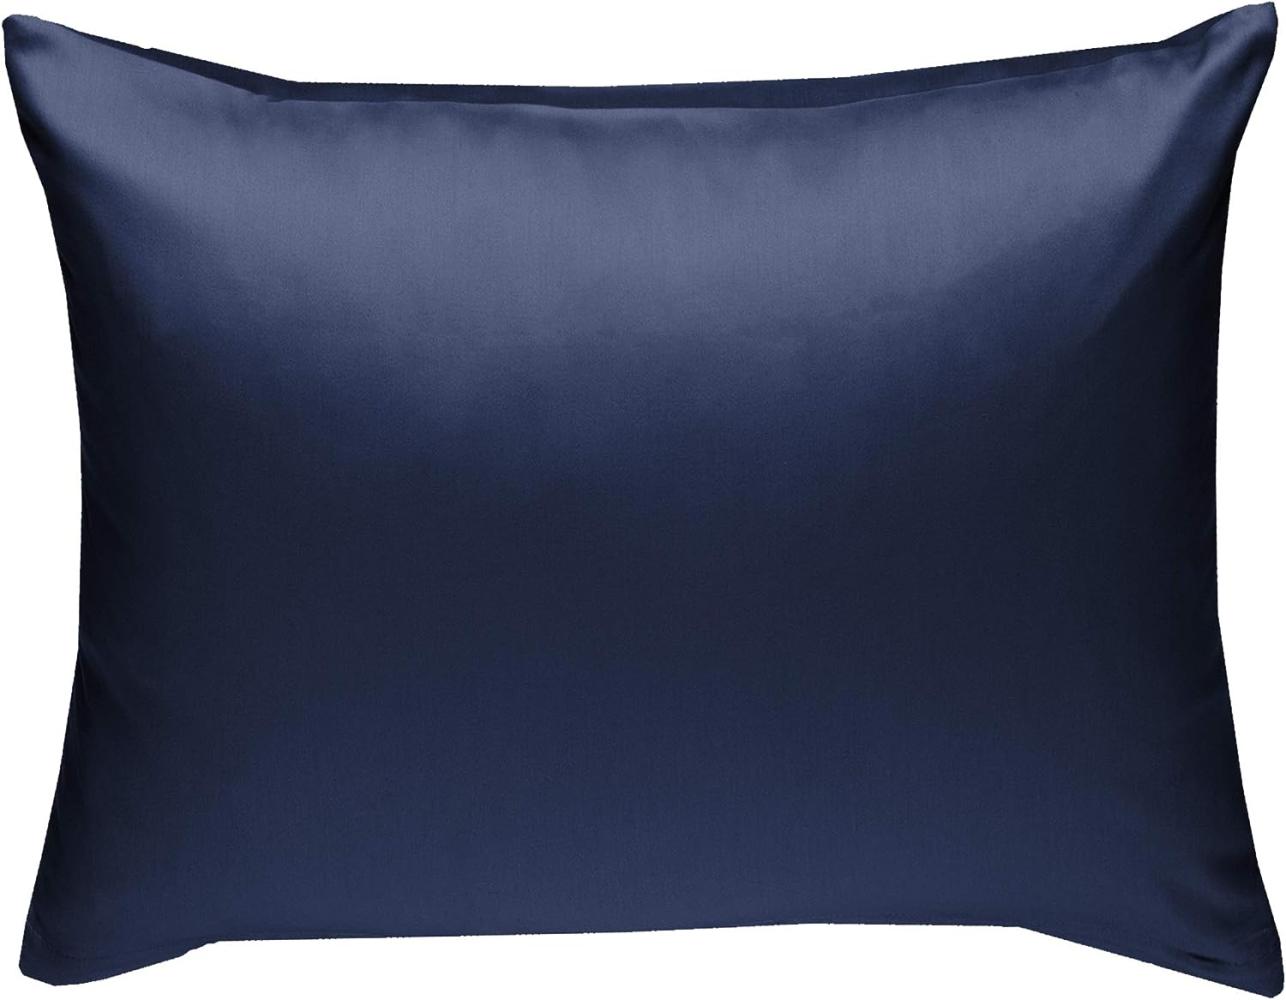 Bettwaesche-mit-Stil Mako-Satin / Baumwollsatin Bettwäsche uni / einfarbig dunkelblau Kissenbezug 70x90 cm Bild 1